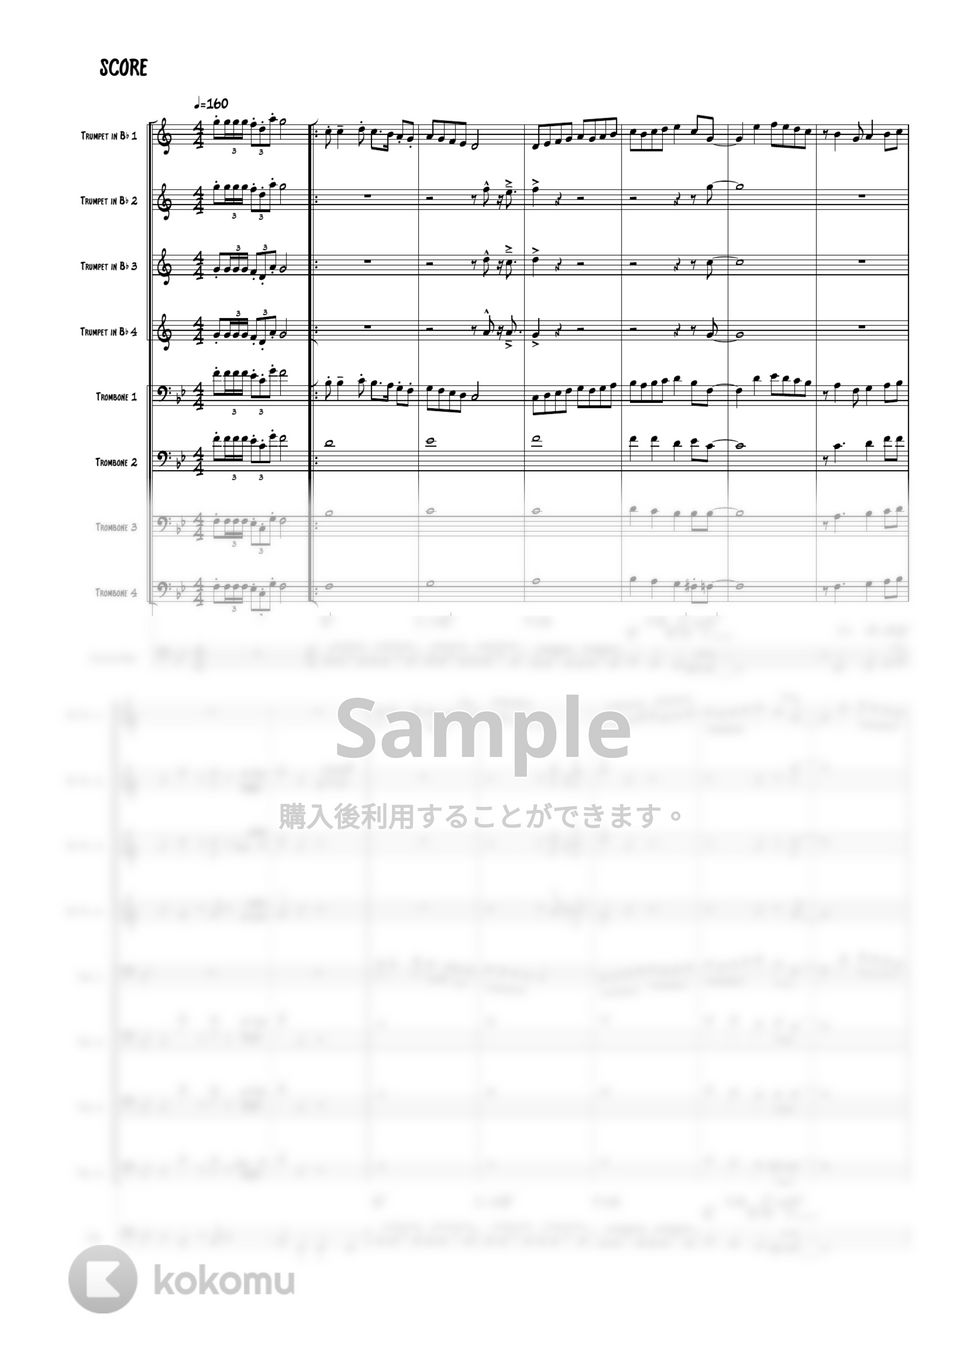 ヤマダ電機のテーマソング - ヤマダ電機の唄 (トランペット / トロンボーンアンサンブル) by 高田将利